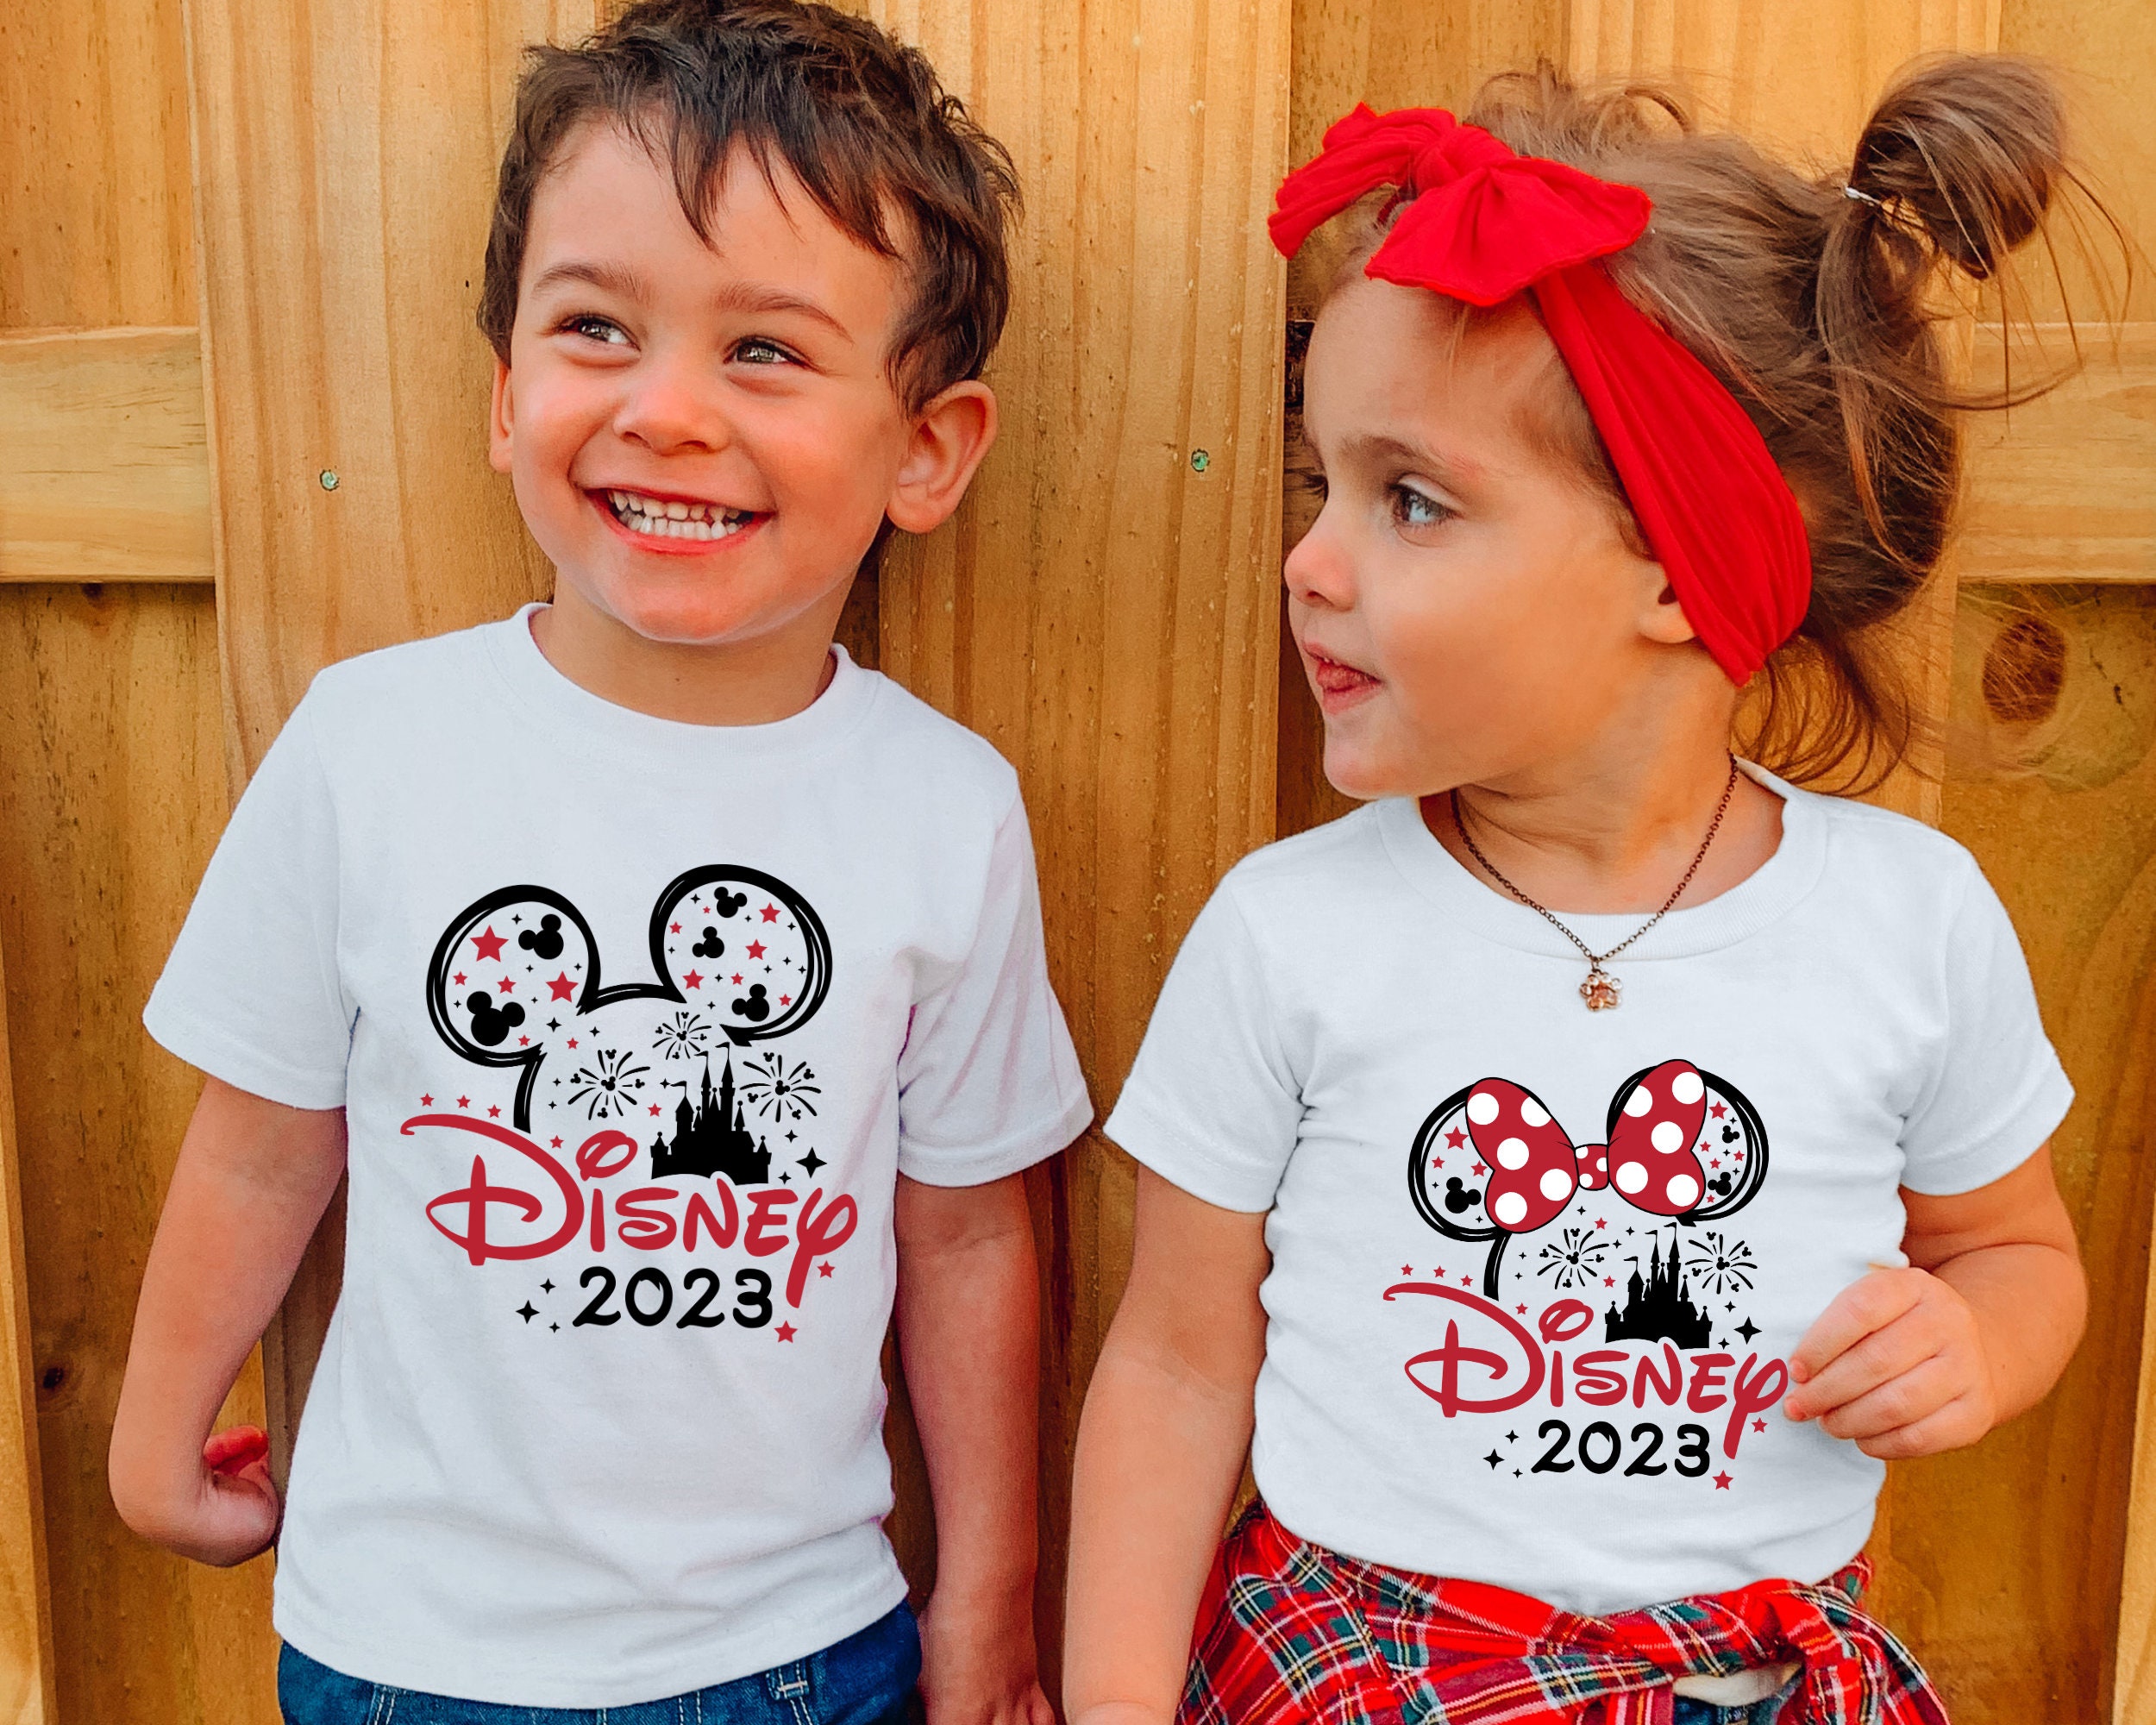 Discover Camiseta Familia Disney World 2023 Trip para Hombre Mujer y Niño